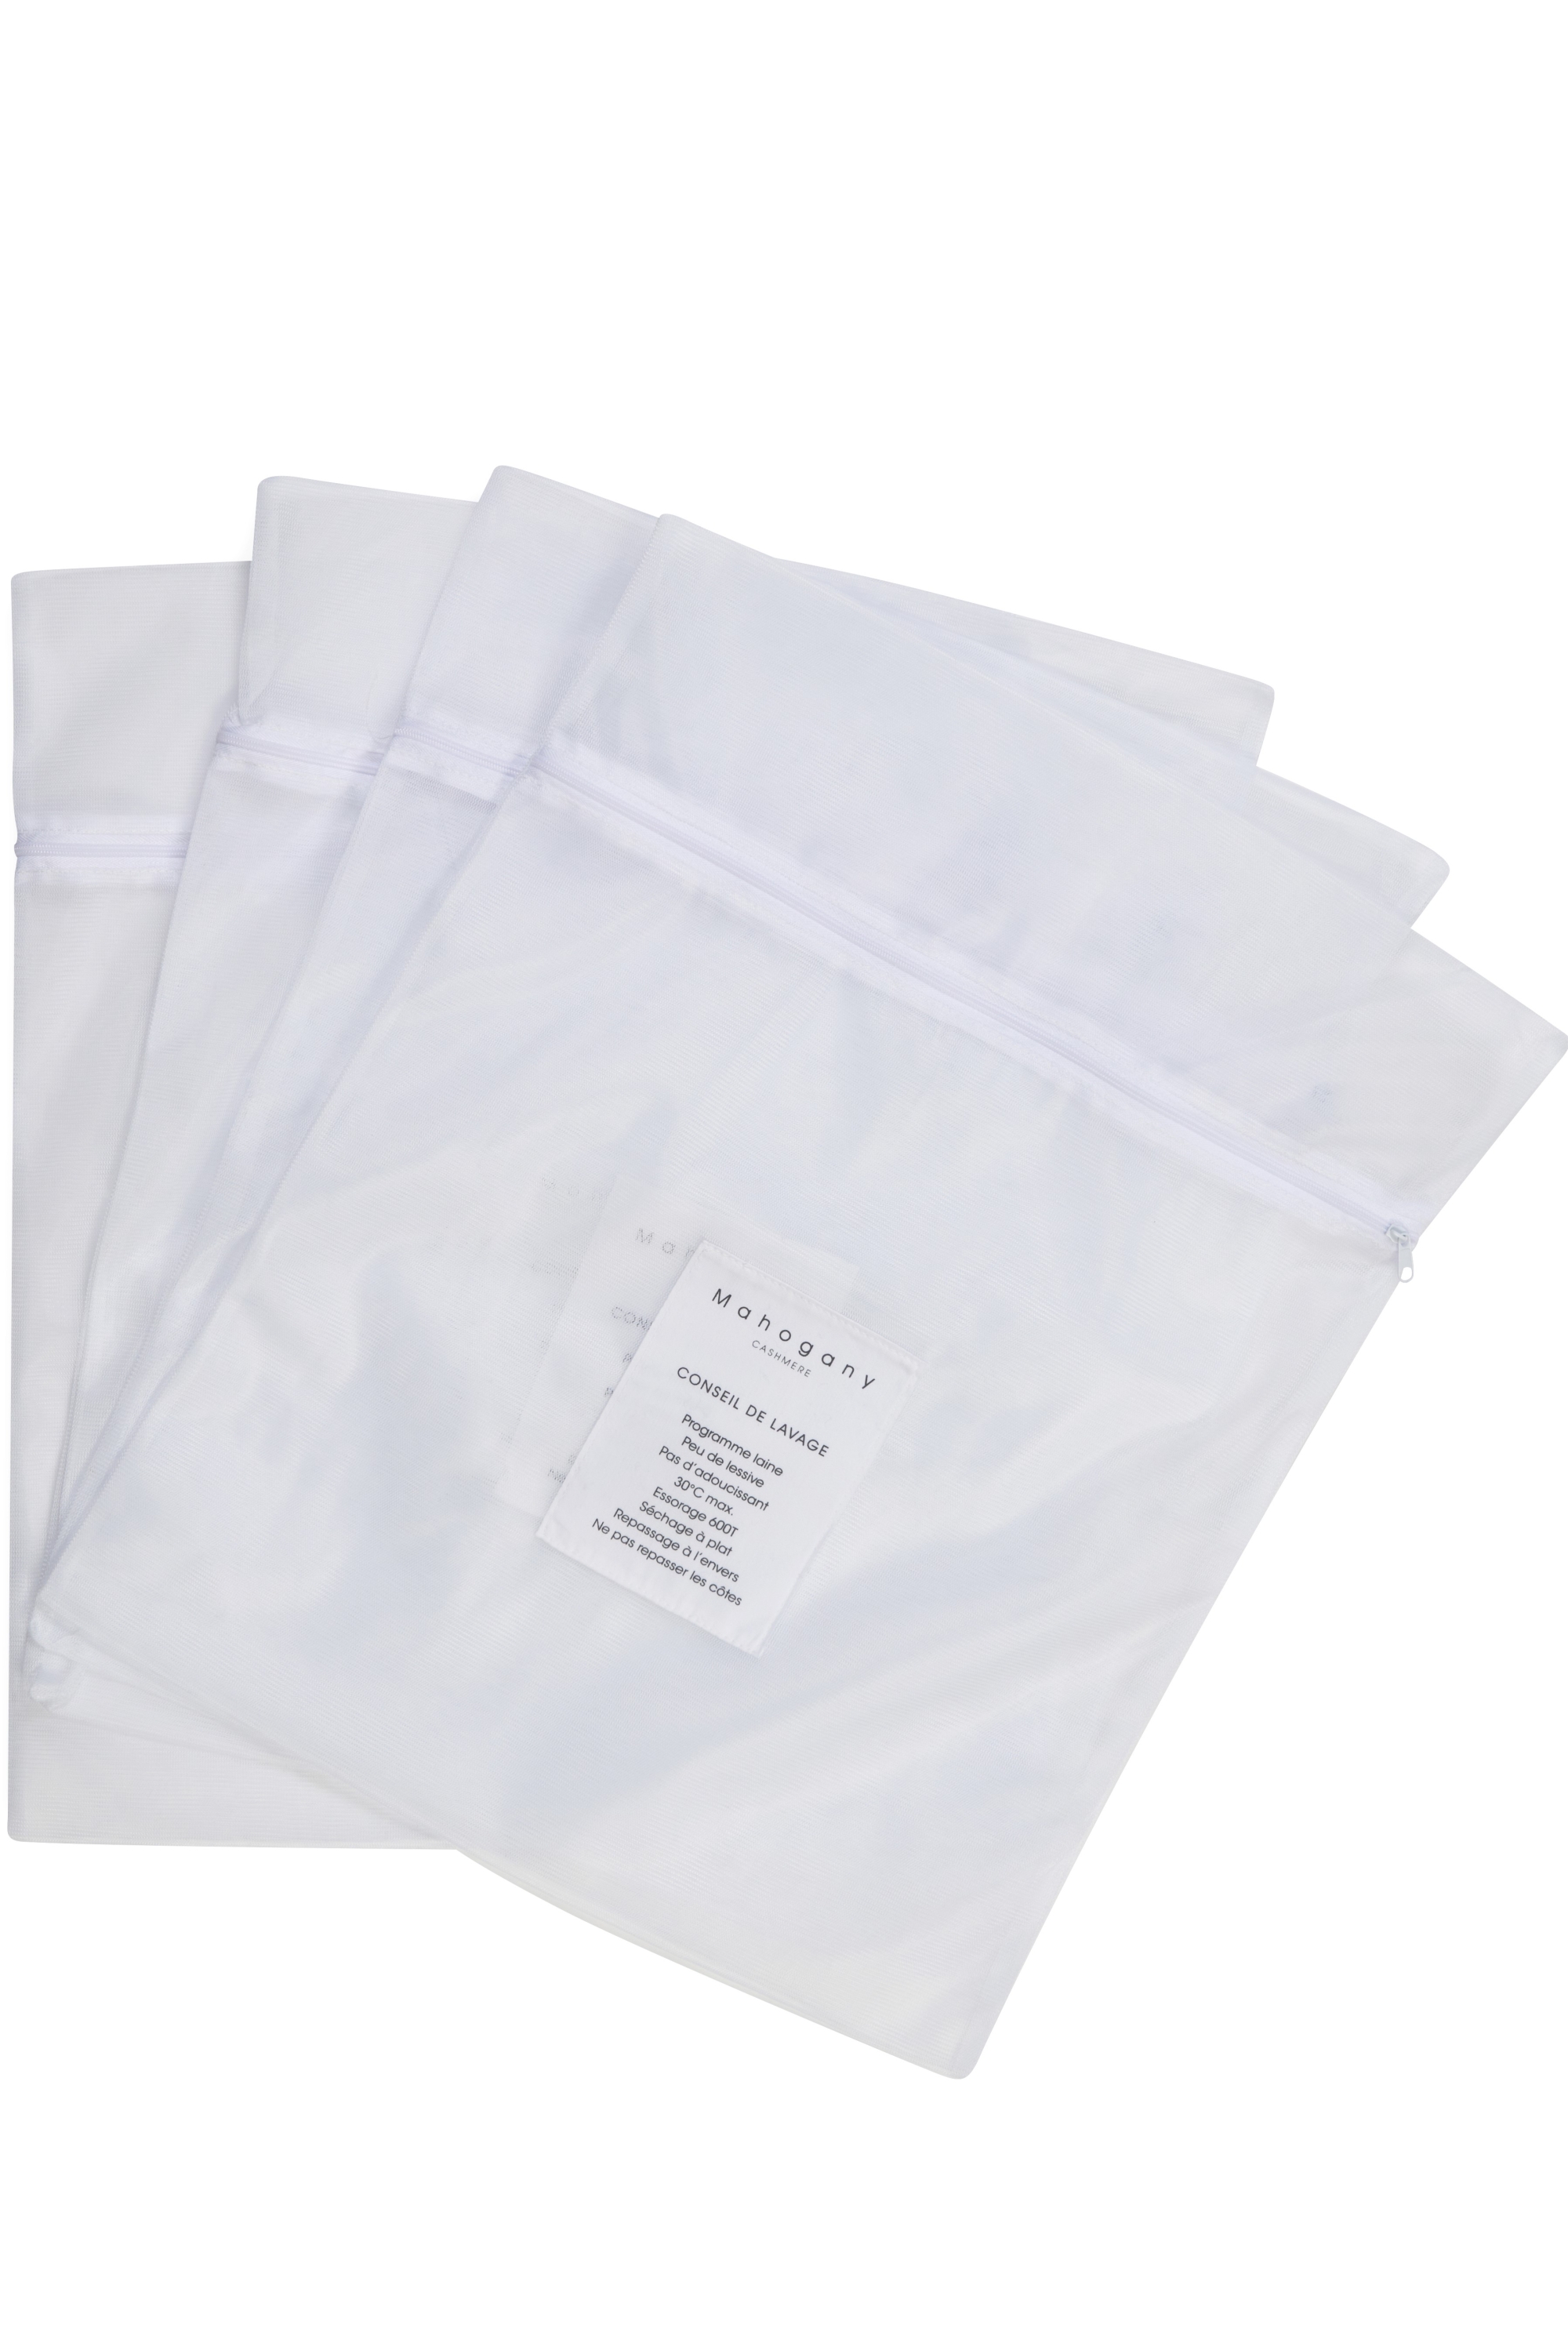 Washing bag accessori sac de lavage white taglia unica